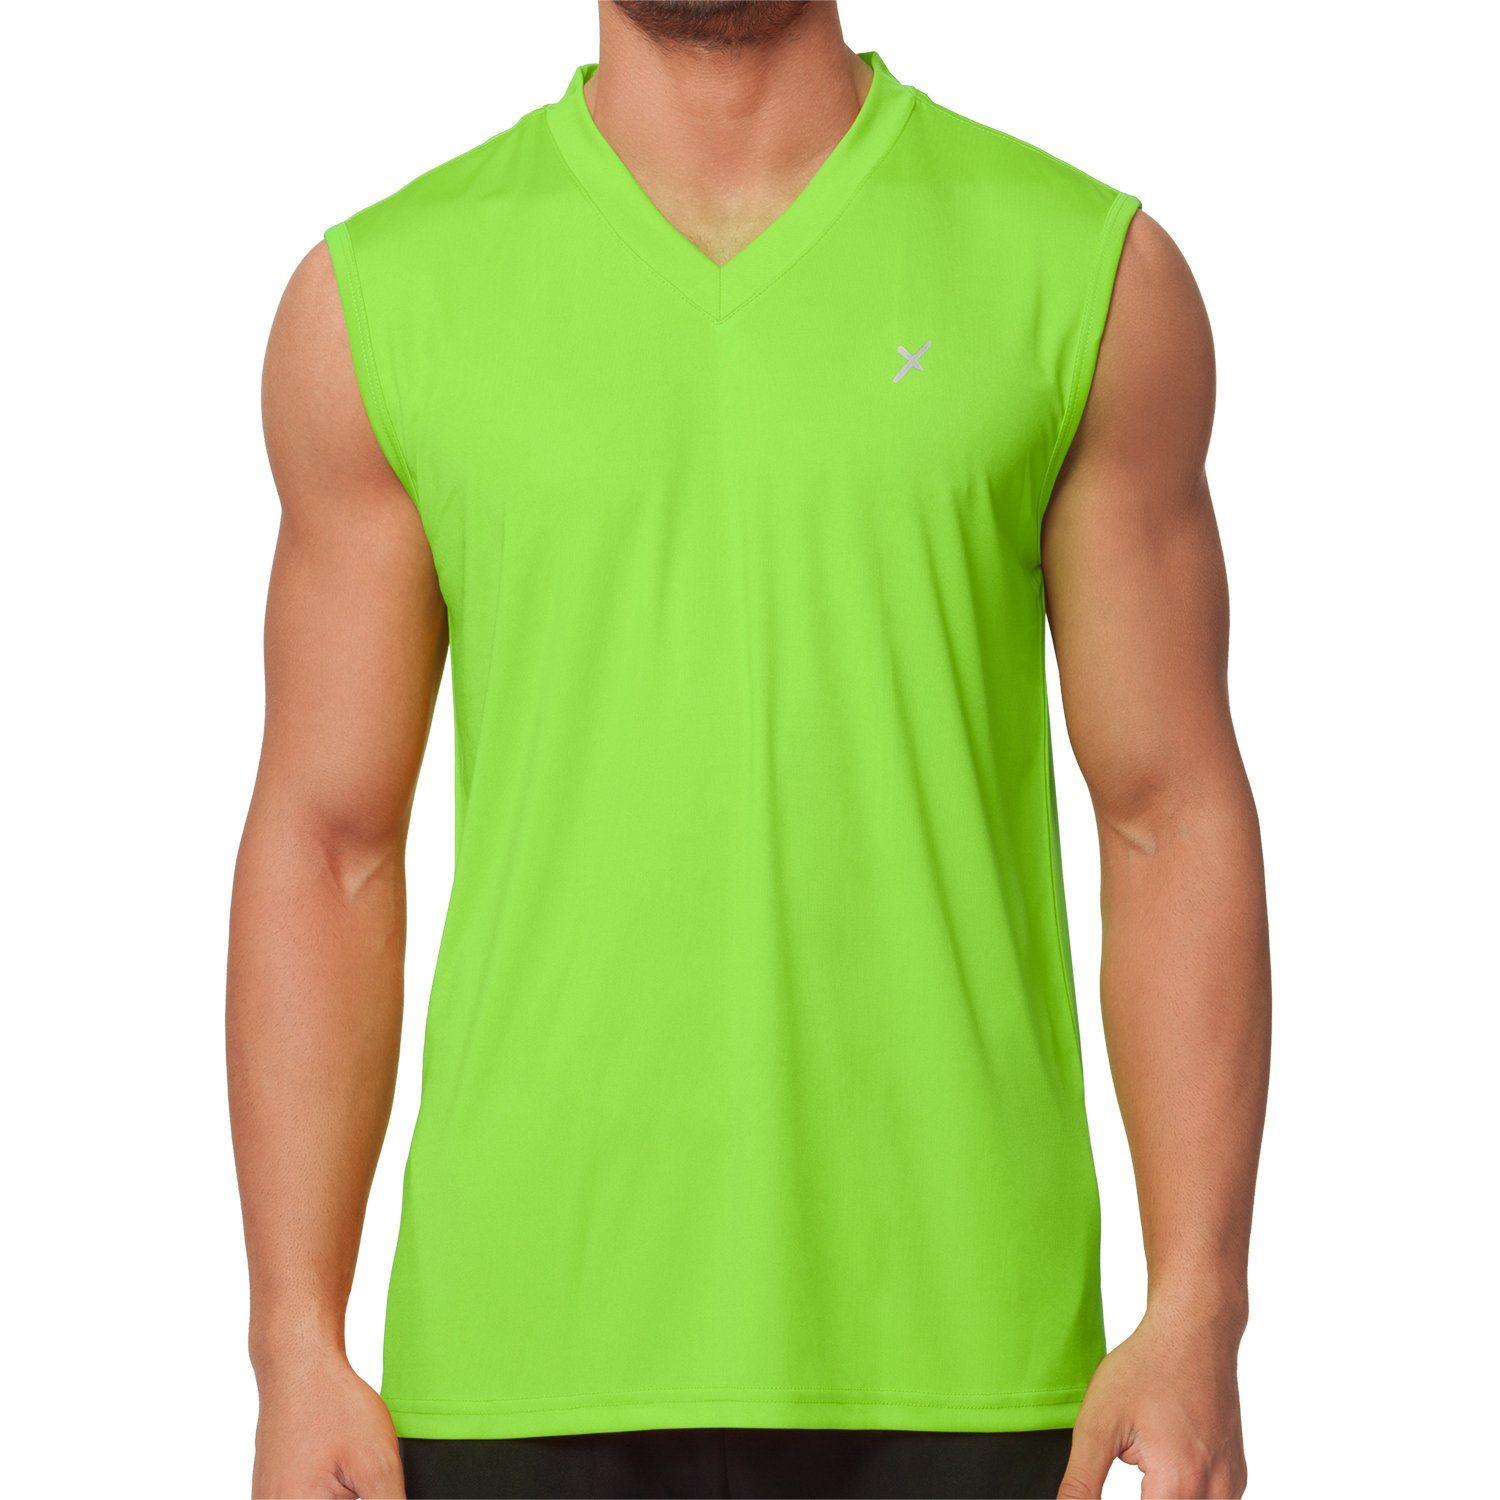 Muscle-Shirt Sport Grün Trainingsshirt Collection CFLEX Fitness Herren Sportswear Shirt